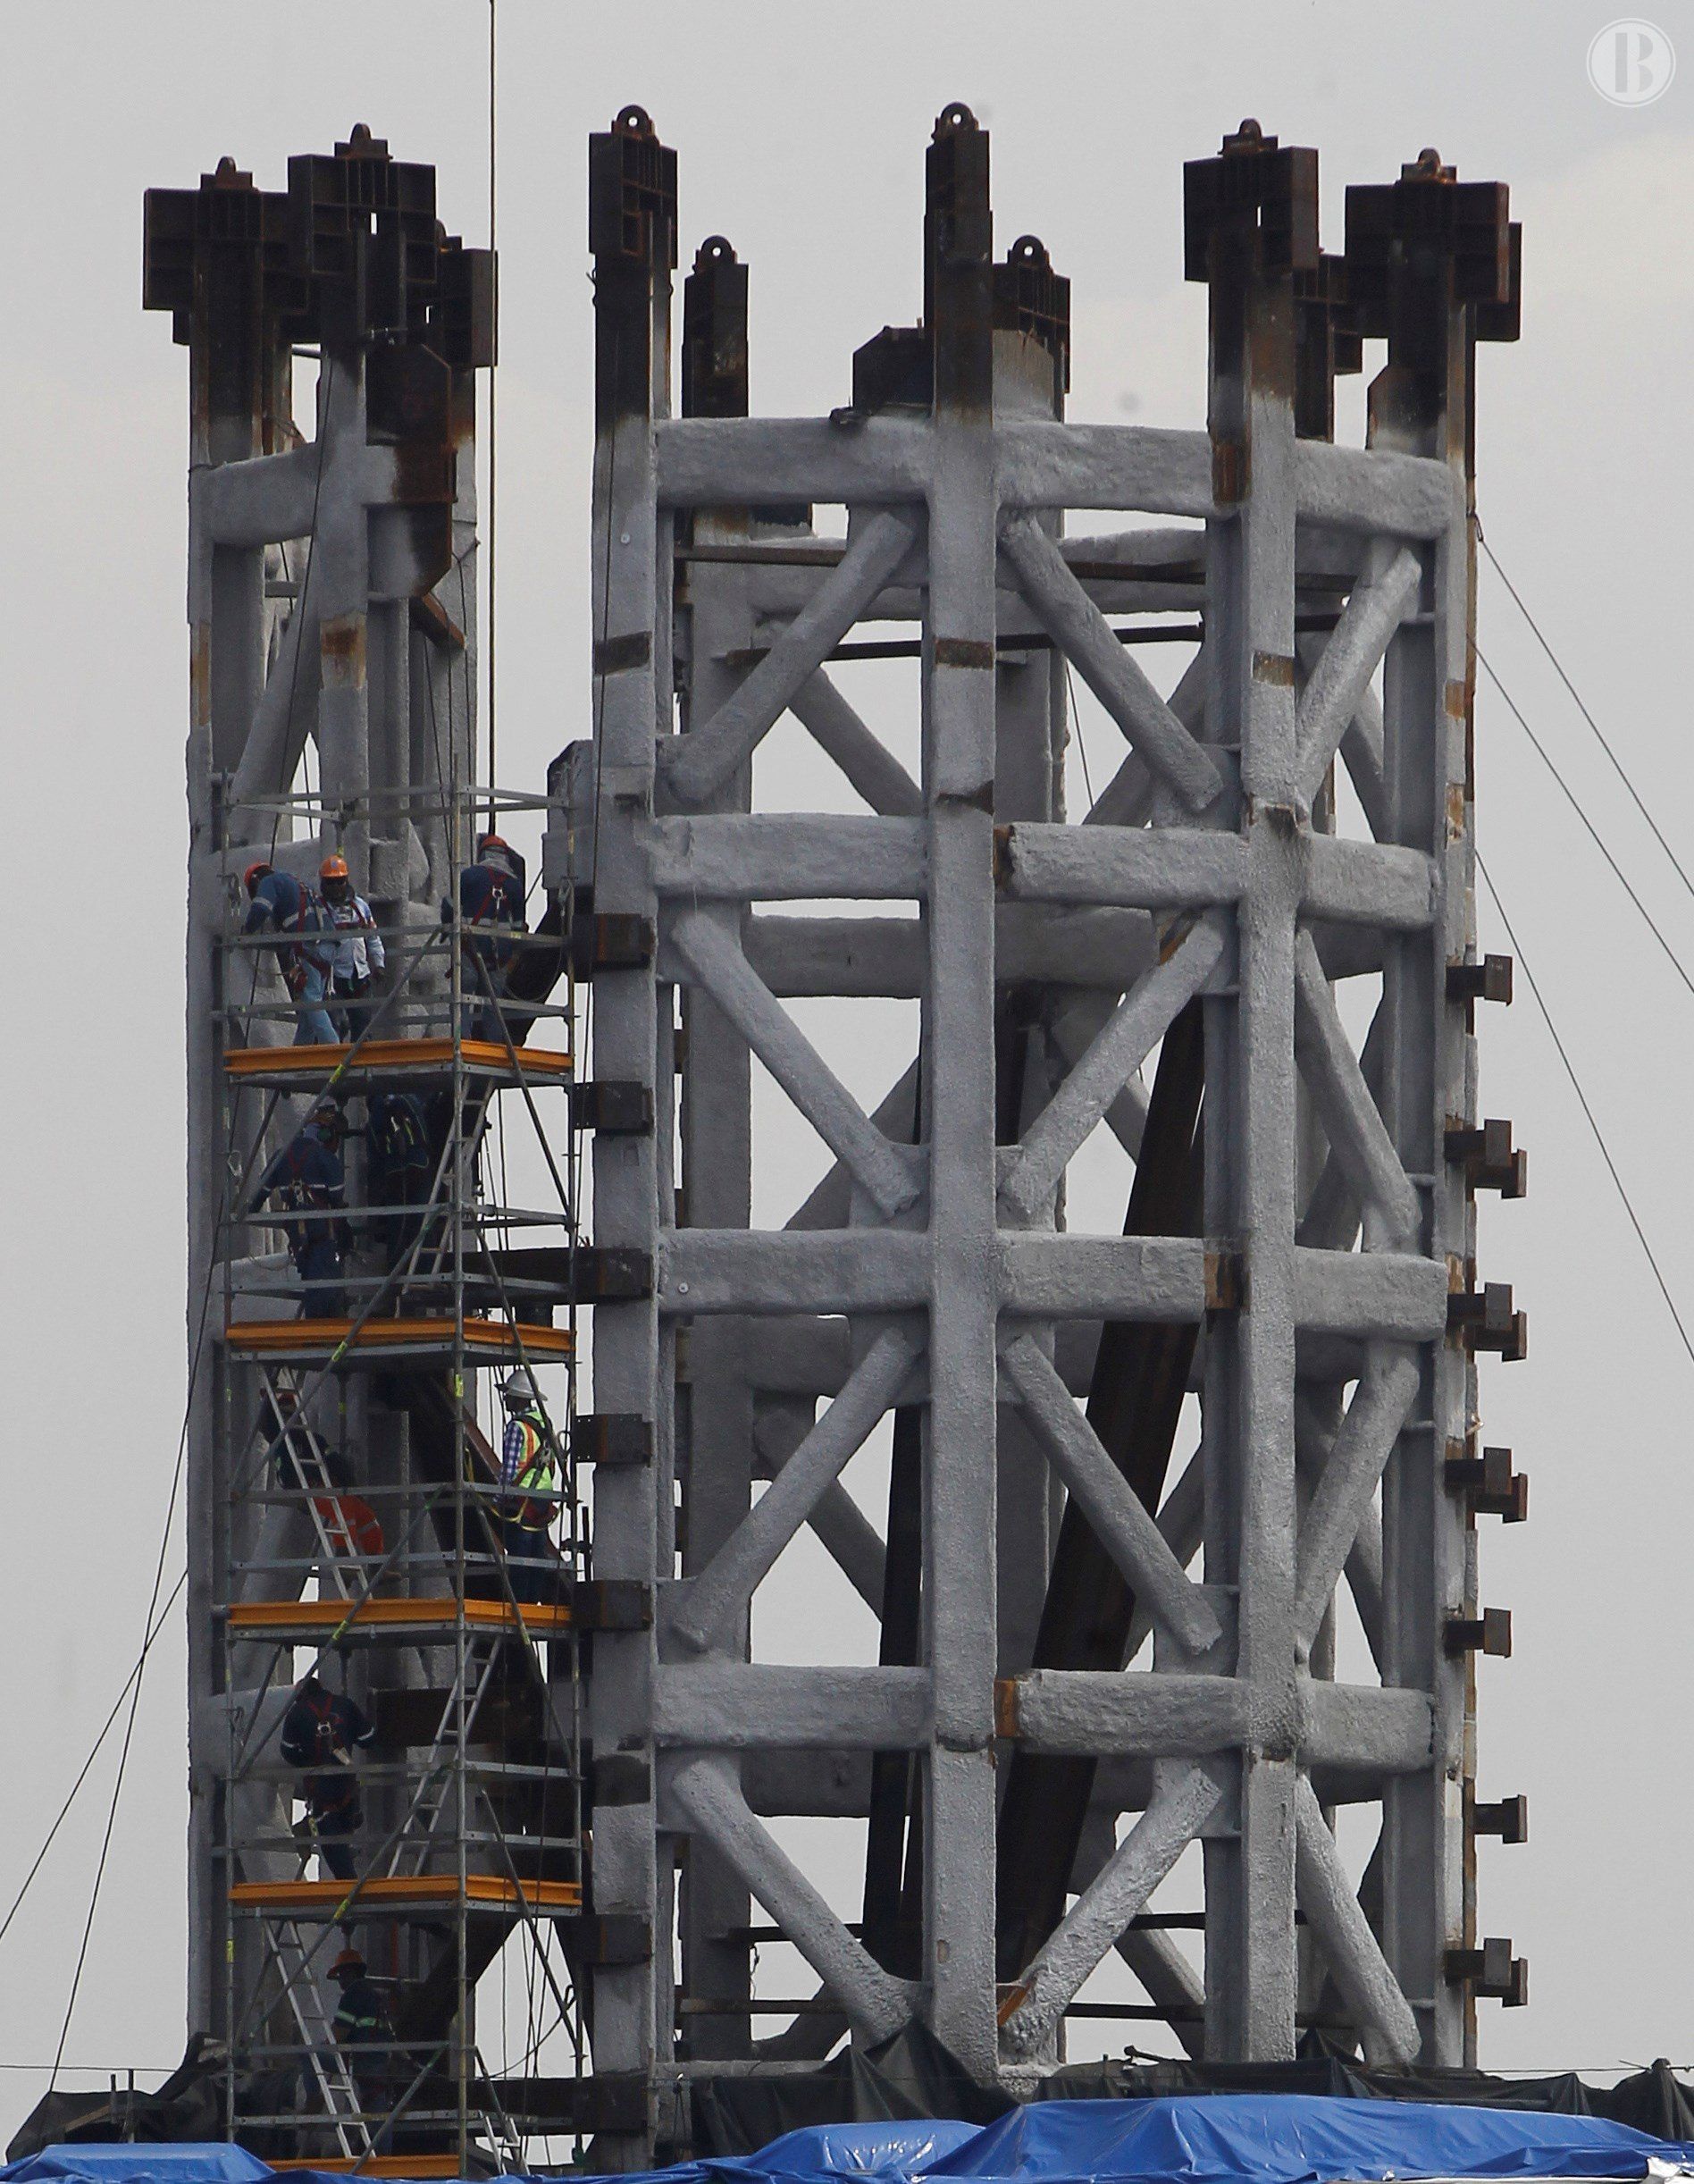  Una torre de control a medias, último vestigio de la magna obra de Peña Nieto